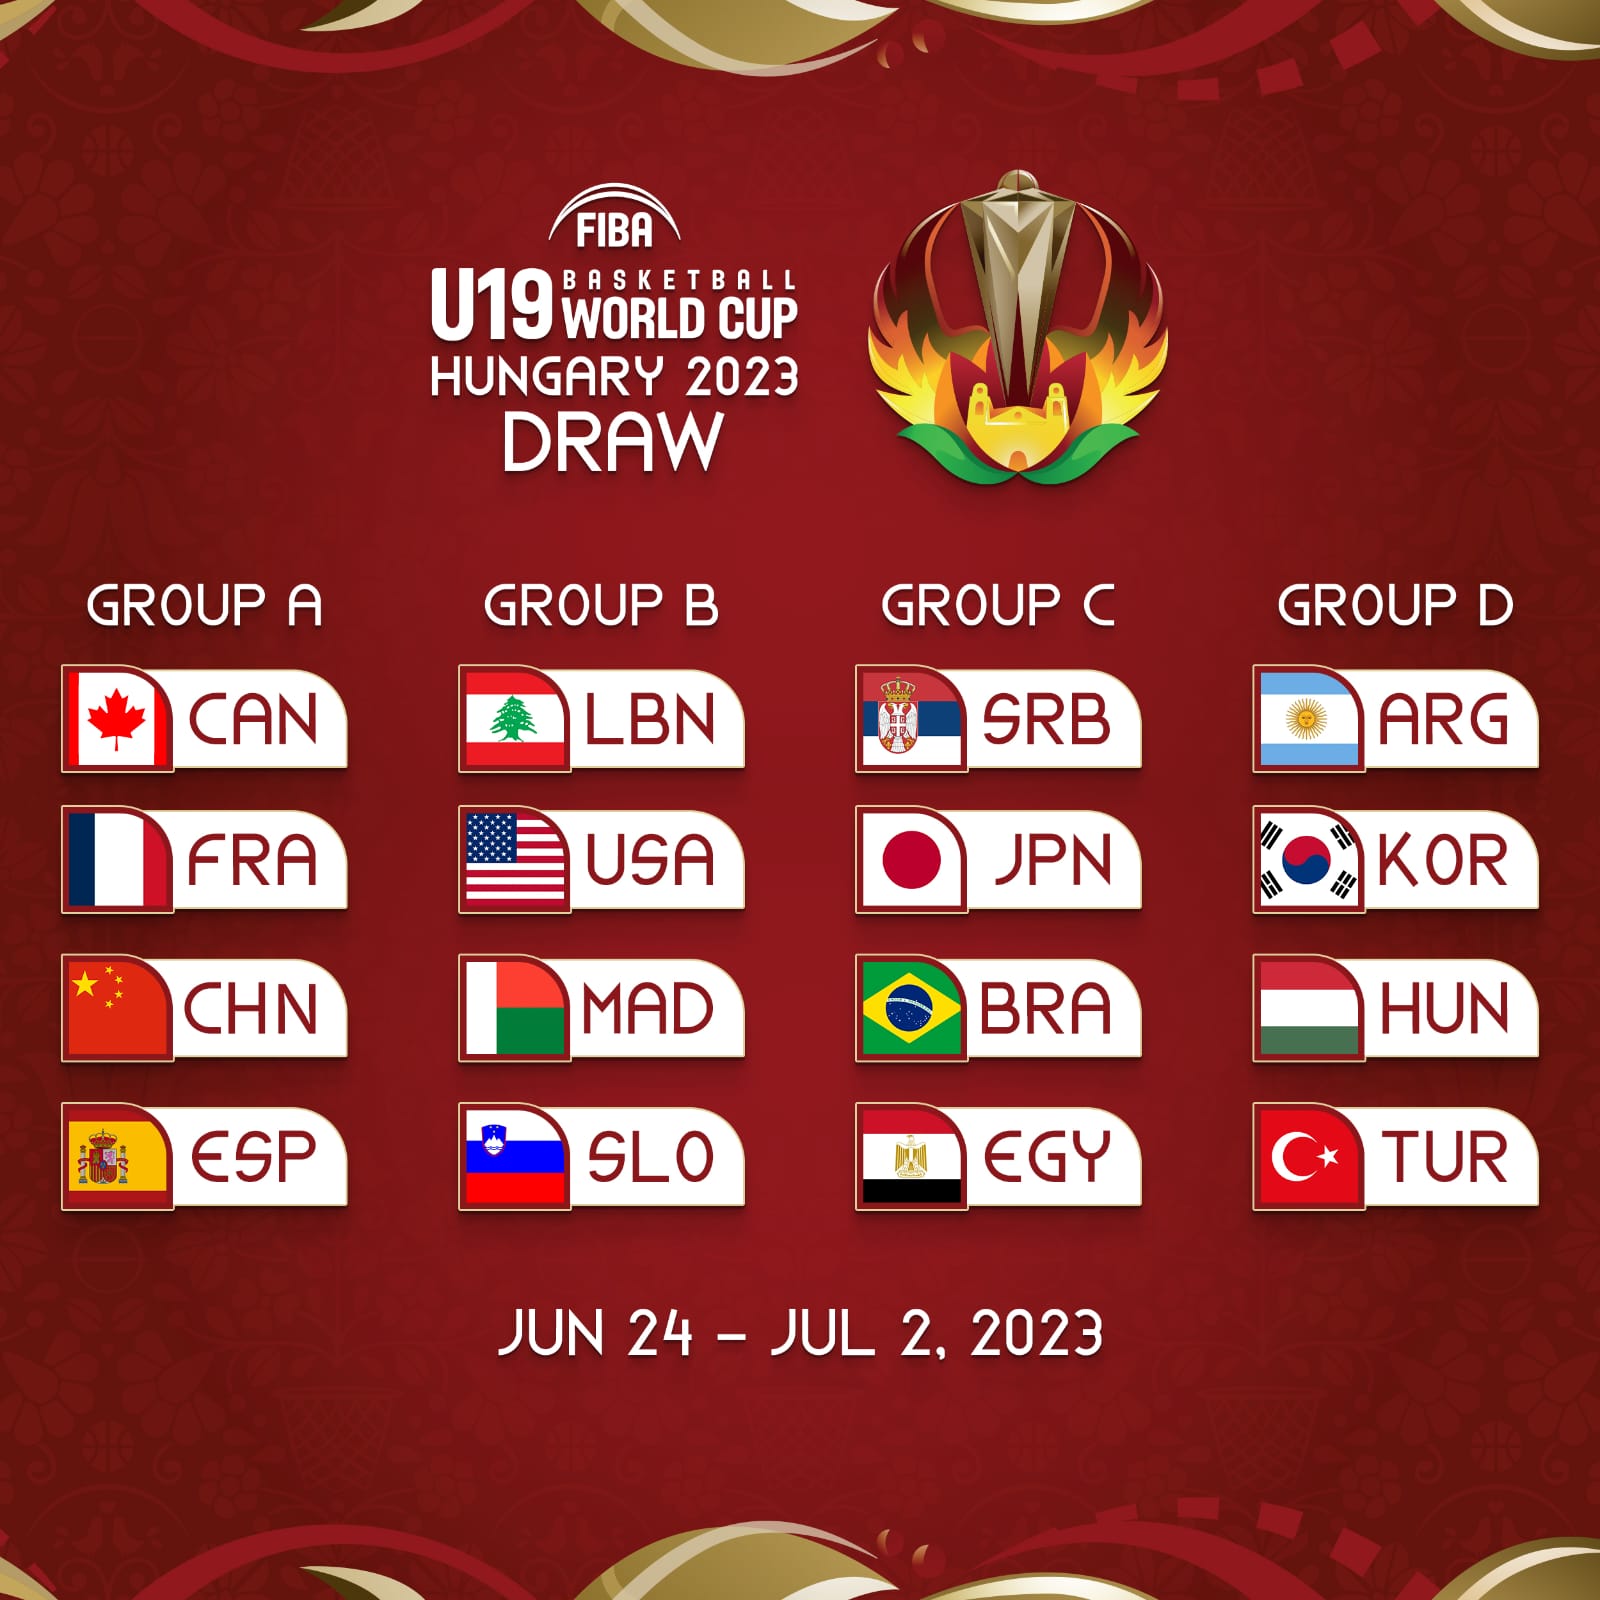 Törökország, Dél-Korea és Argentína lesznek a csoportellenfeleink az U19-es vb-n